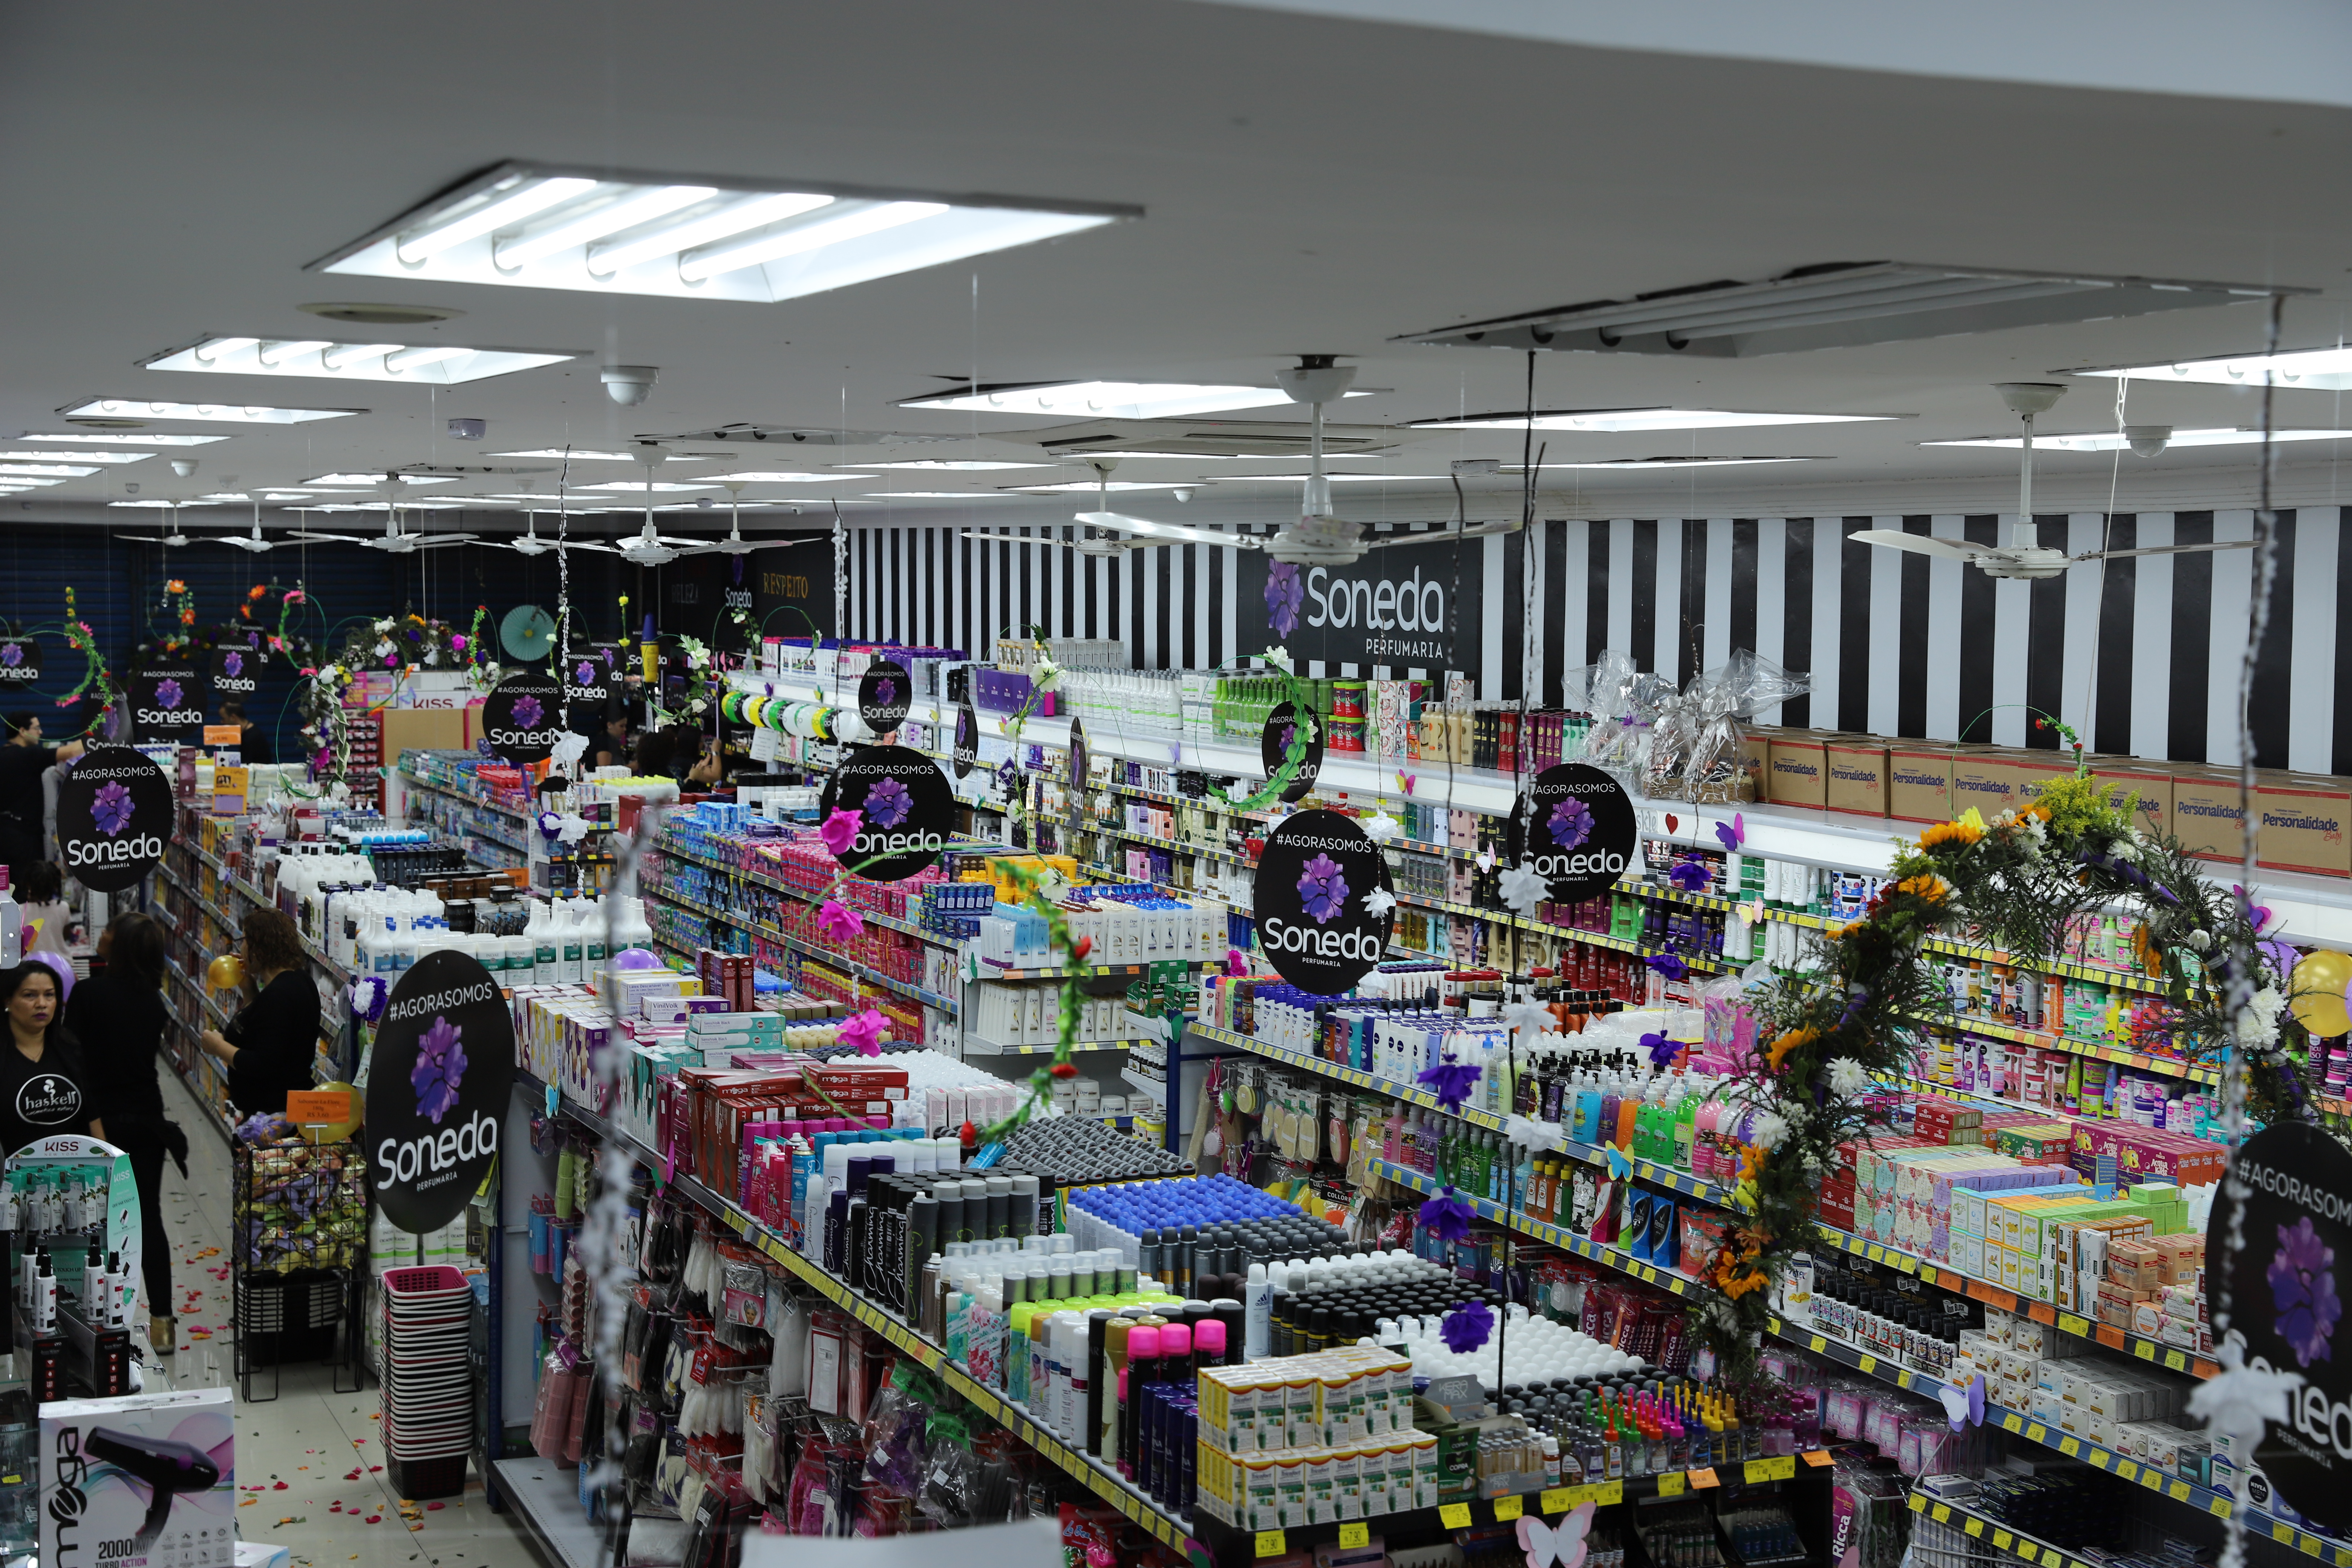 Cacau Show abre nova mega store em São Paulo; em três anos, já são 23  unidades - Mercado&Consumo